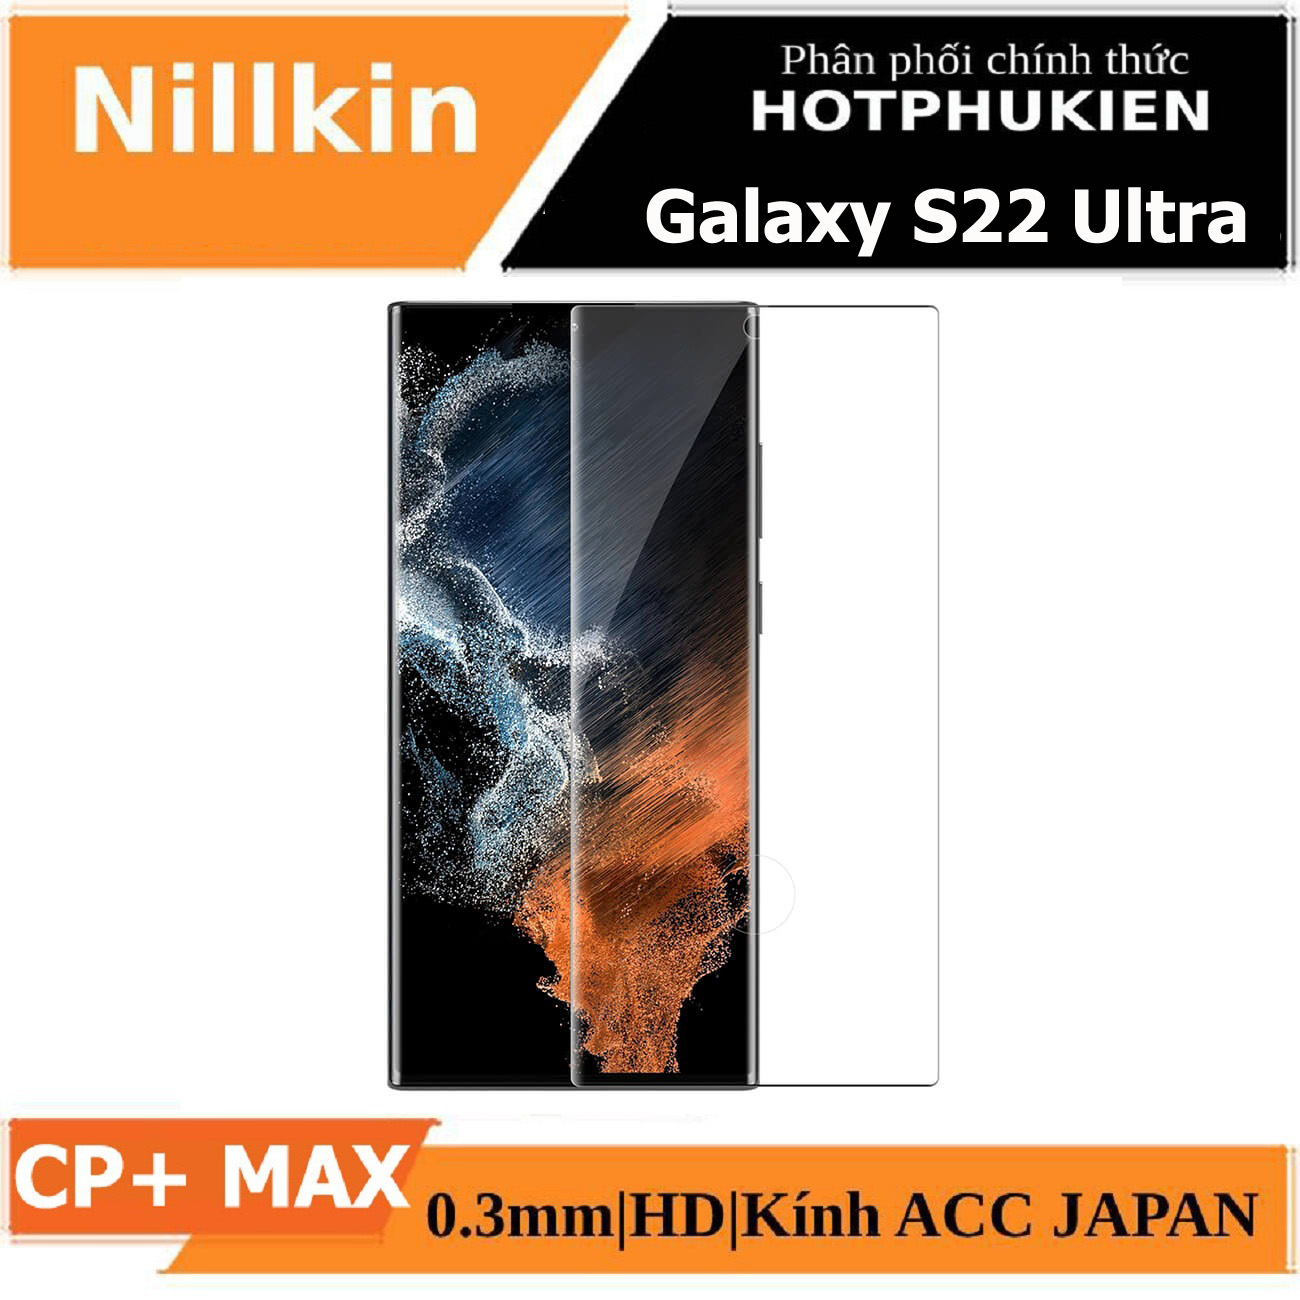 Miếng dán kính cường lực full 3D cho Samsung Galaxy S22 Ultra hiệu Nillkin CP+ Max (Mỏng 0.3mm, Kính ACC Japan, Chống Lóa, Hạn Chế Vân Tay) - Hàng nhập khẩu